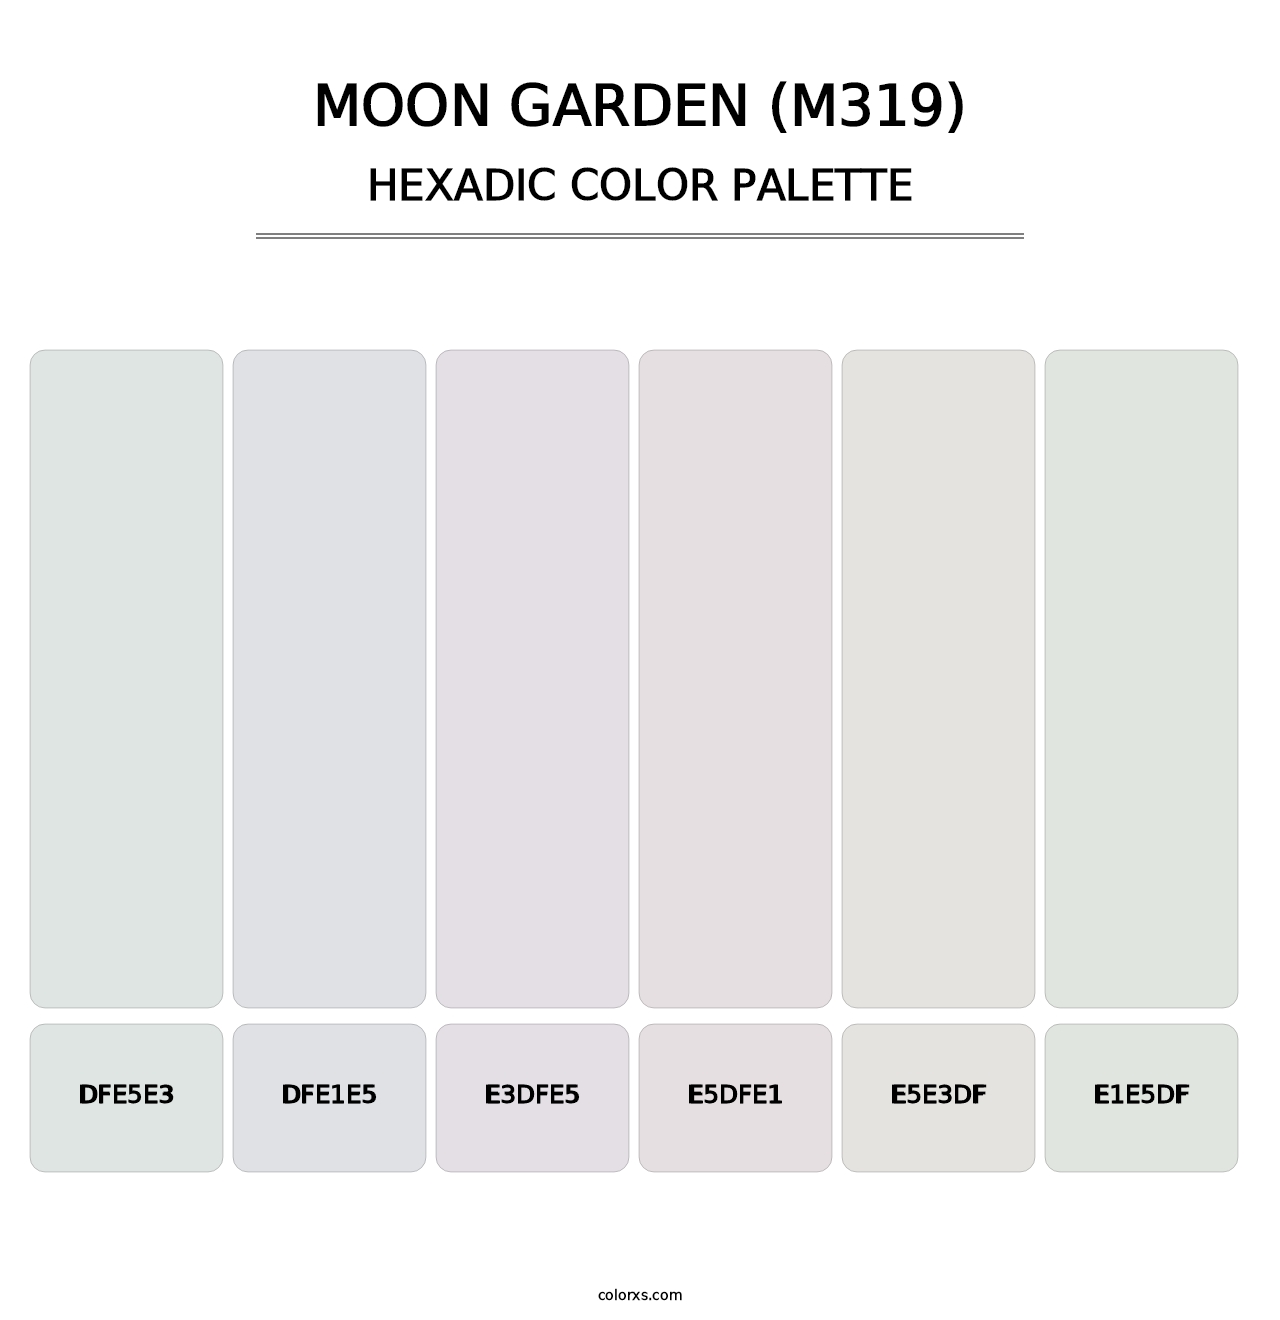 Moon Garden (M319) - Hexadic Color Palette